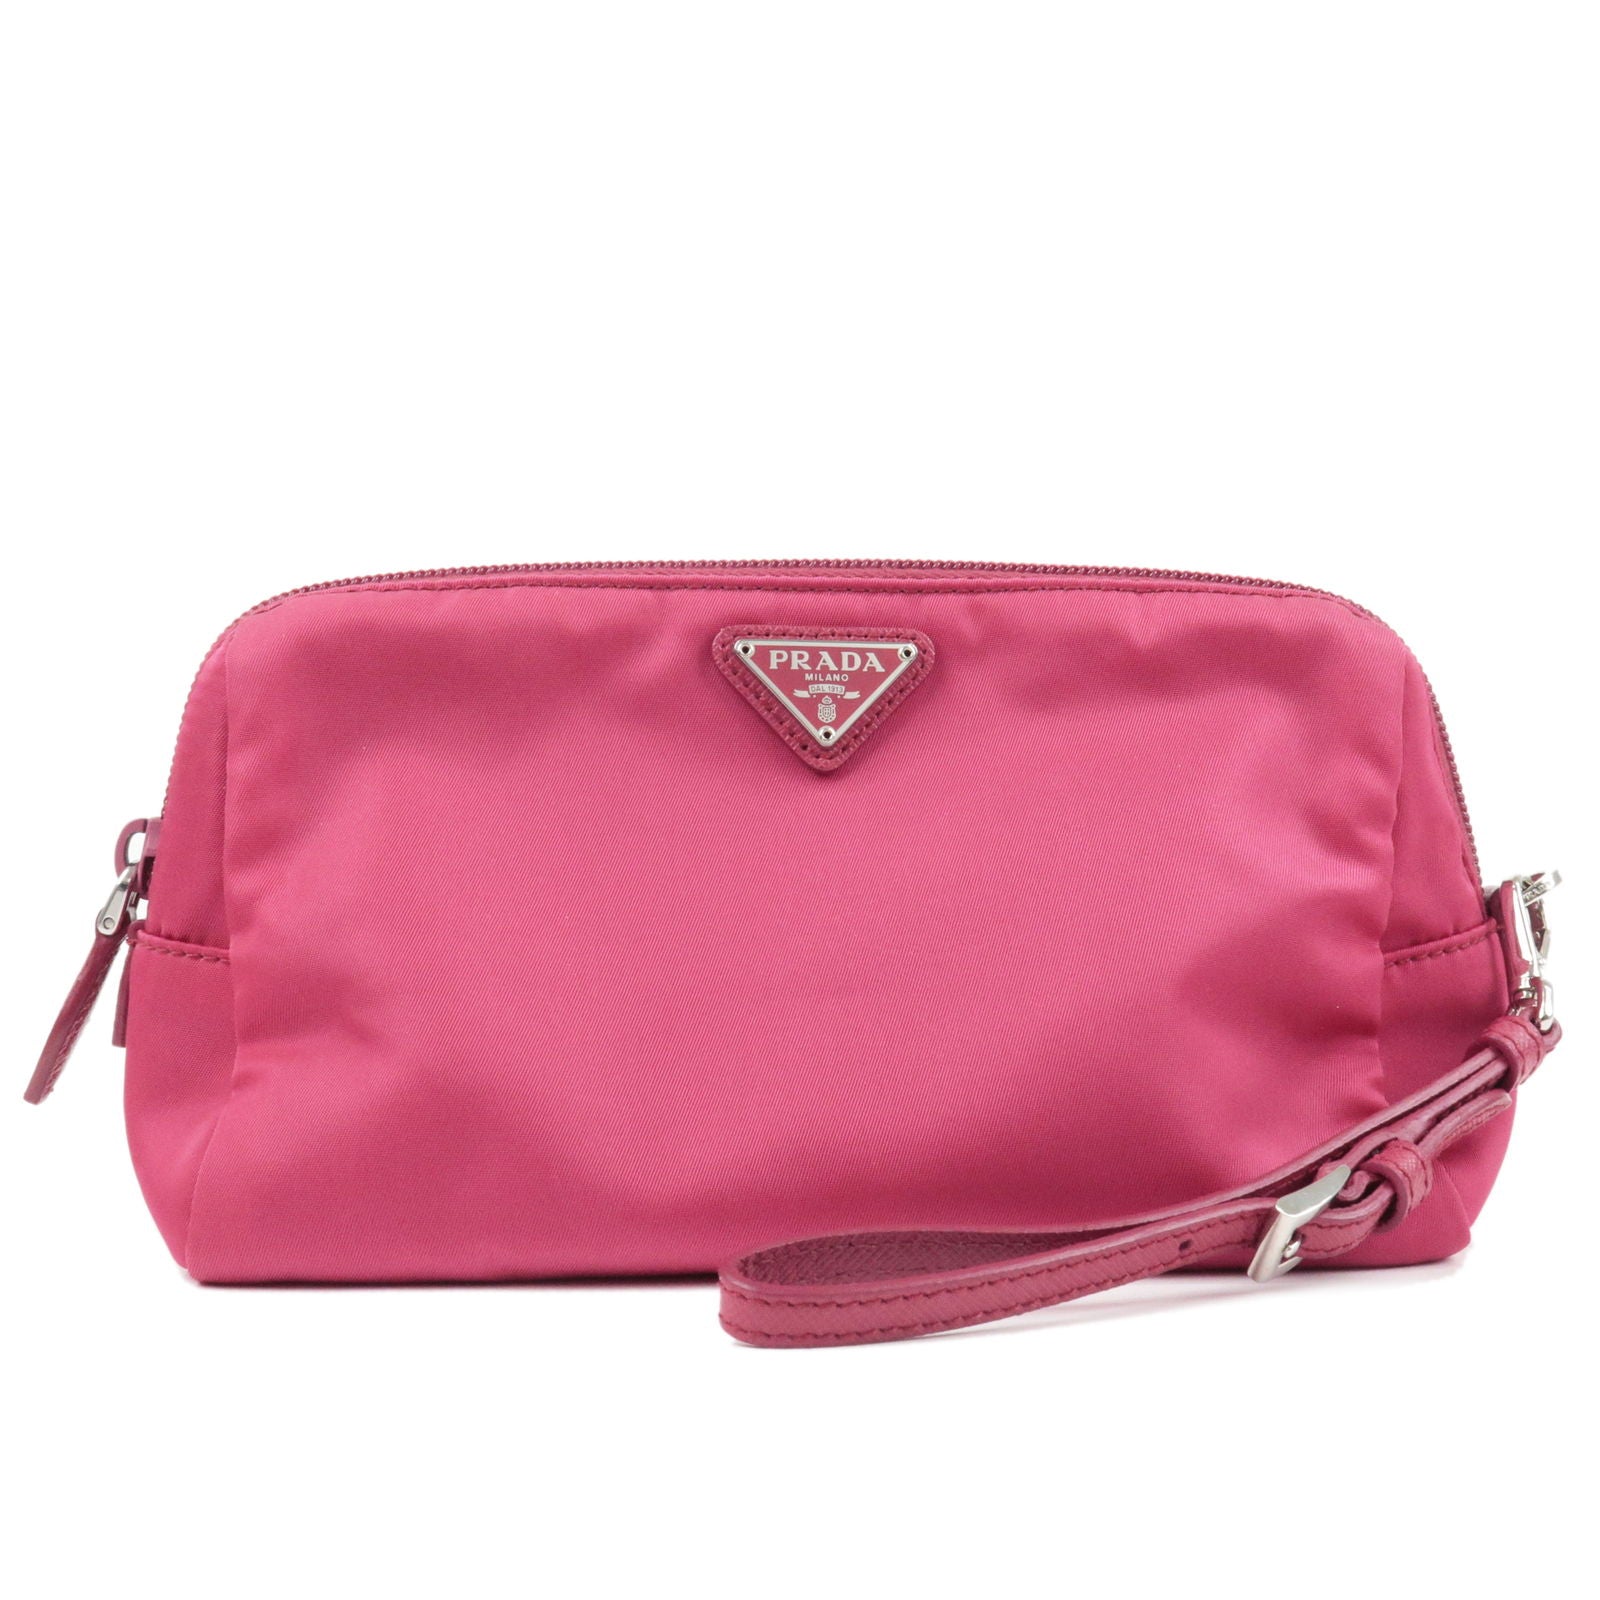 Prada | Bags | Prada Womens Pink Suede Twin Pocket Shoulder Tote Bag |  Poshmark